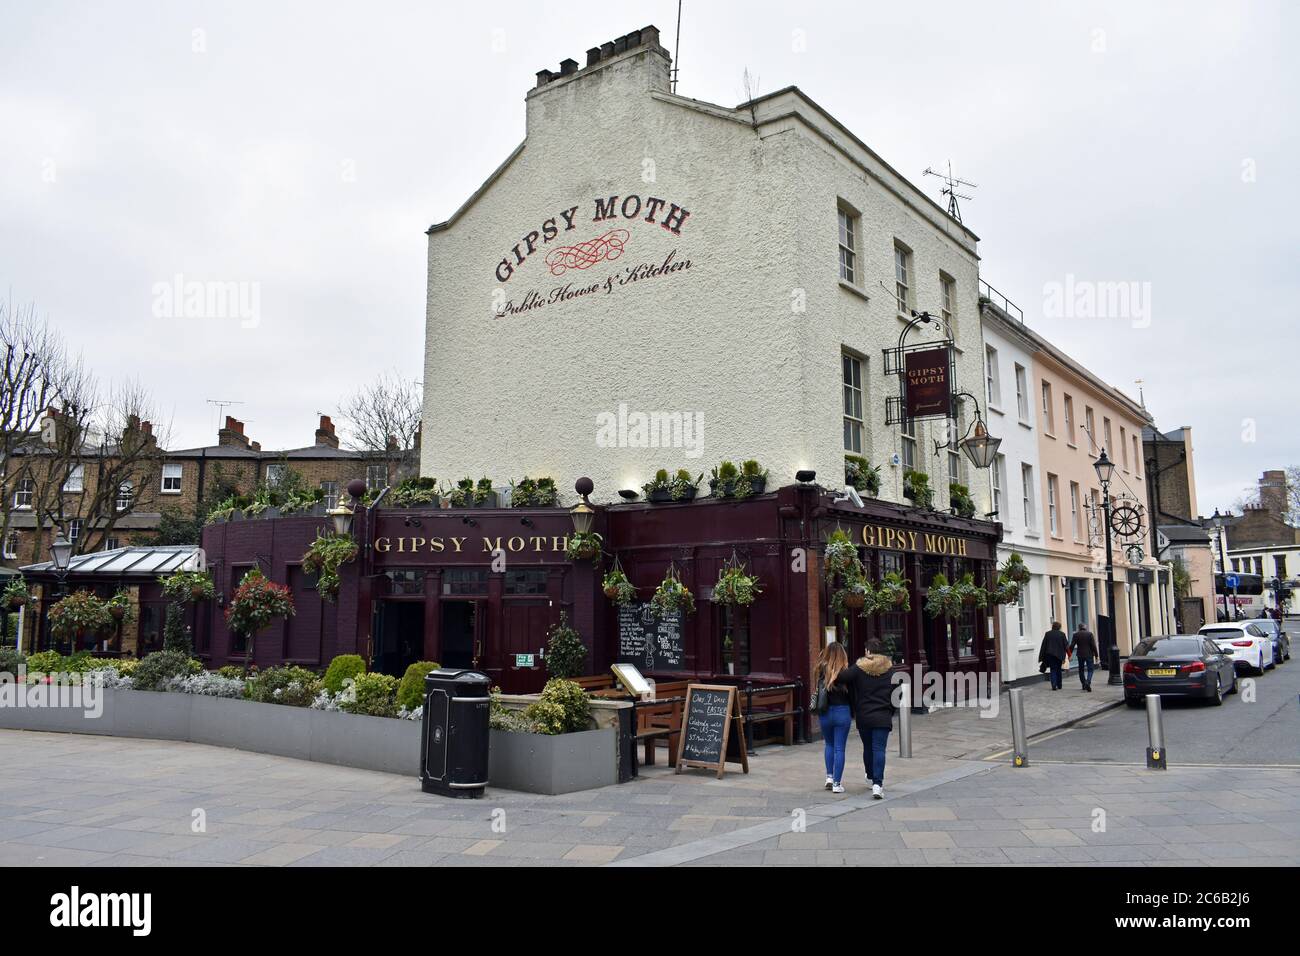 Un pub inglese vecchio stile, The Gypsy Moth, a Greenwich, Londra. Il pub ha una metà inferiore di borgogna con scrittura d'oro e una struttura principale di colore bianco. Foto Stock